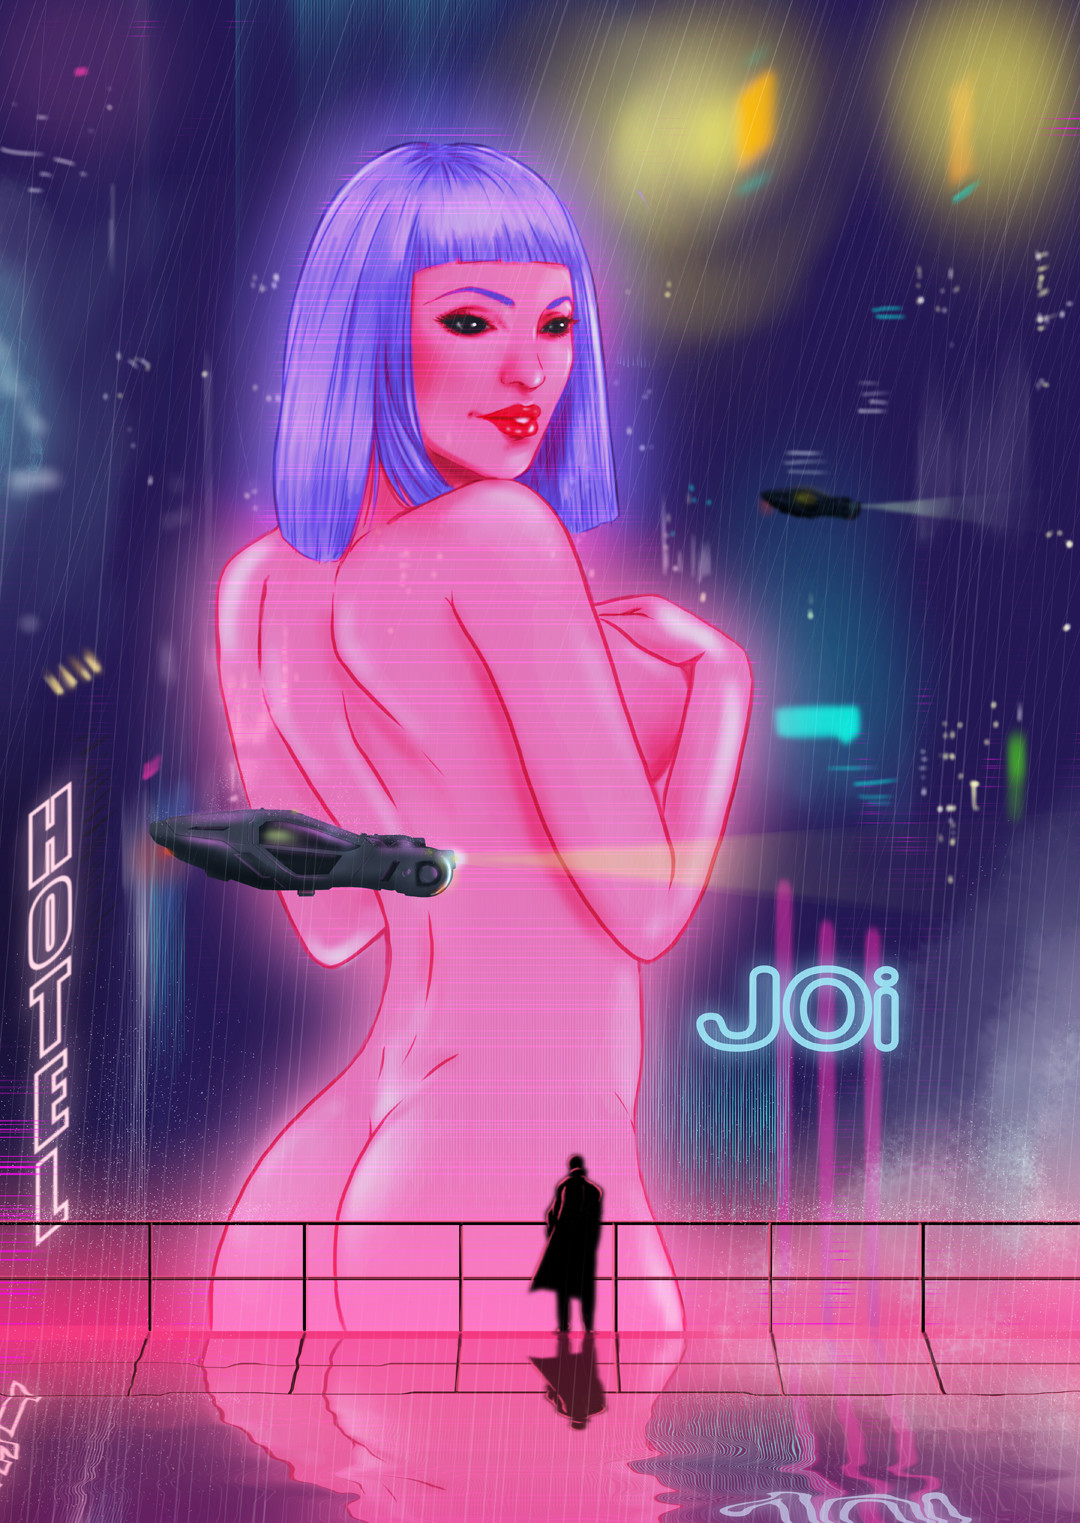 Poster design for Blade Runner 2049.